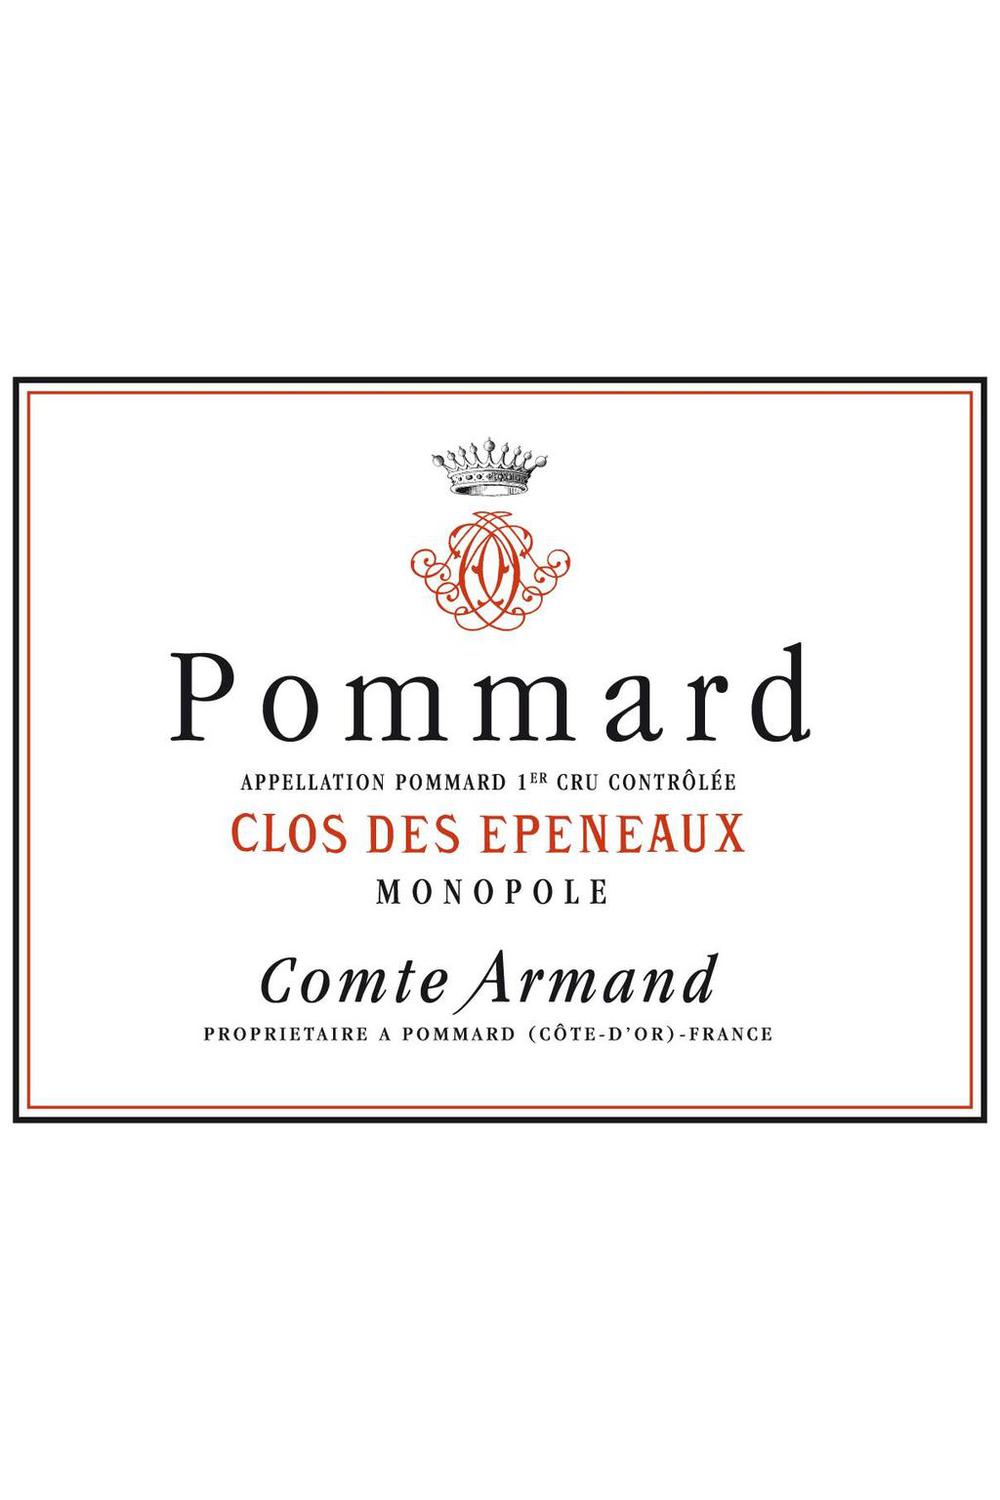 Comte Armand Pommard Clos des Epeneaux Monopole Premier Cru